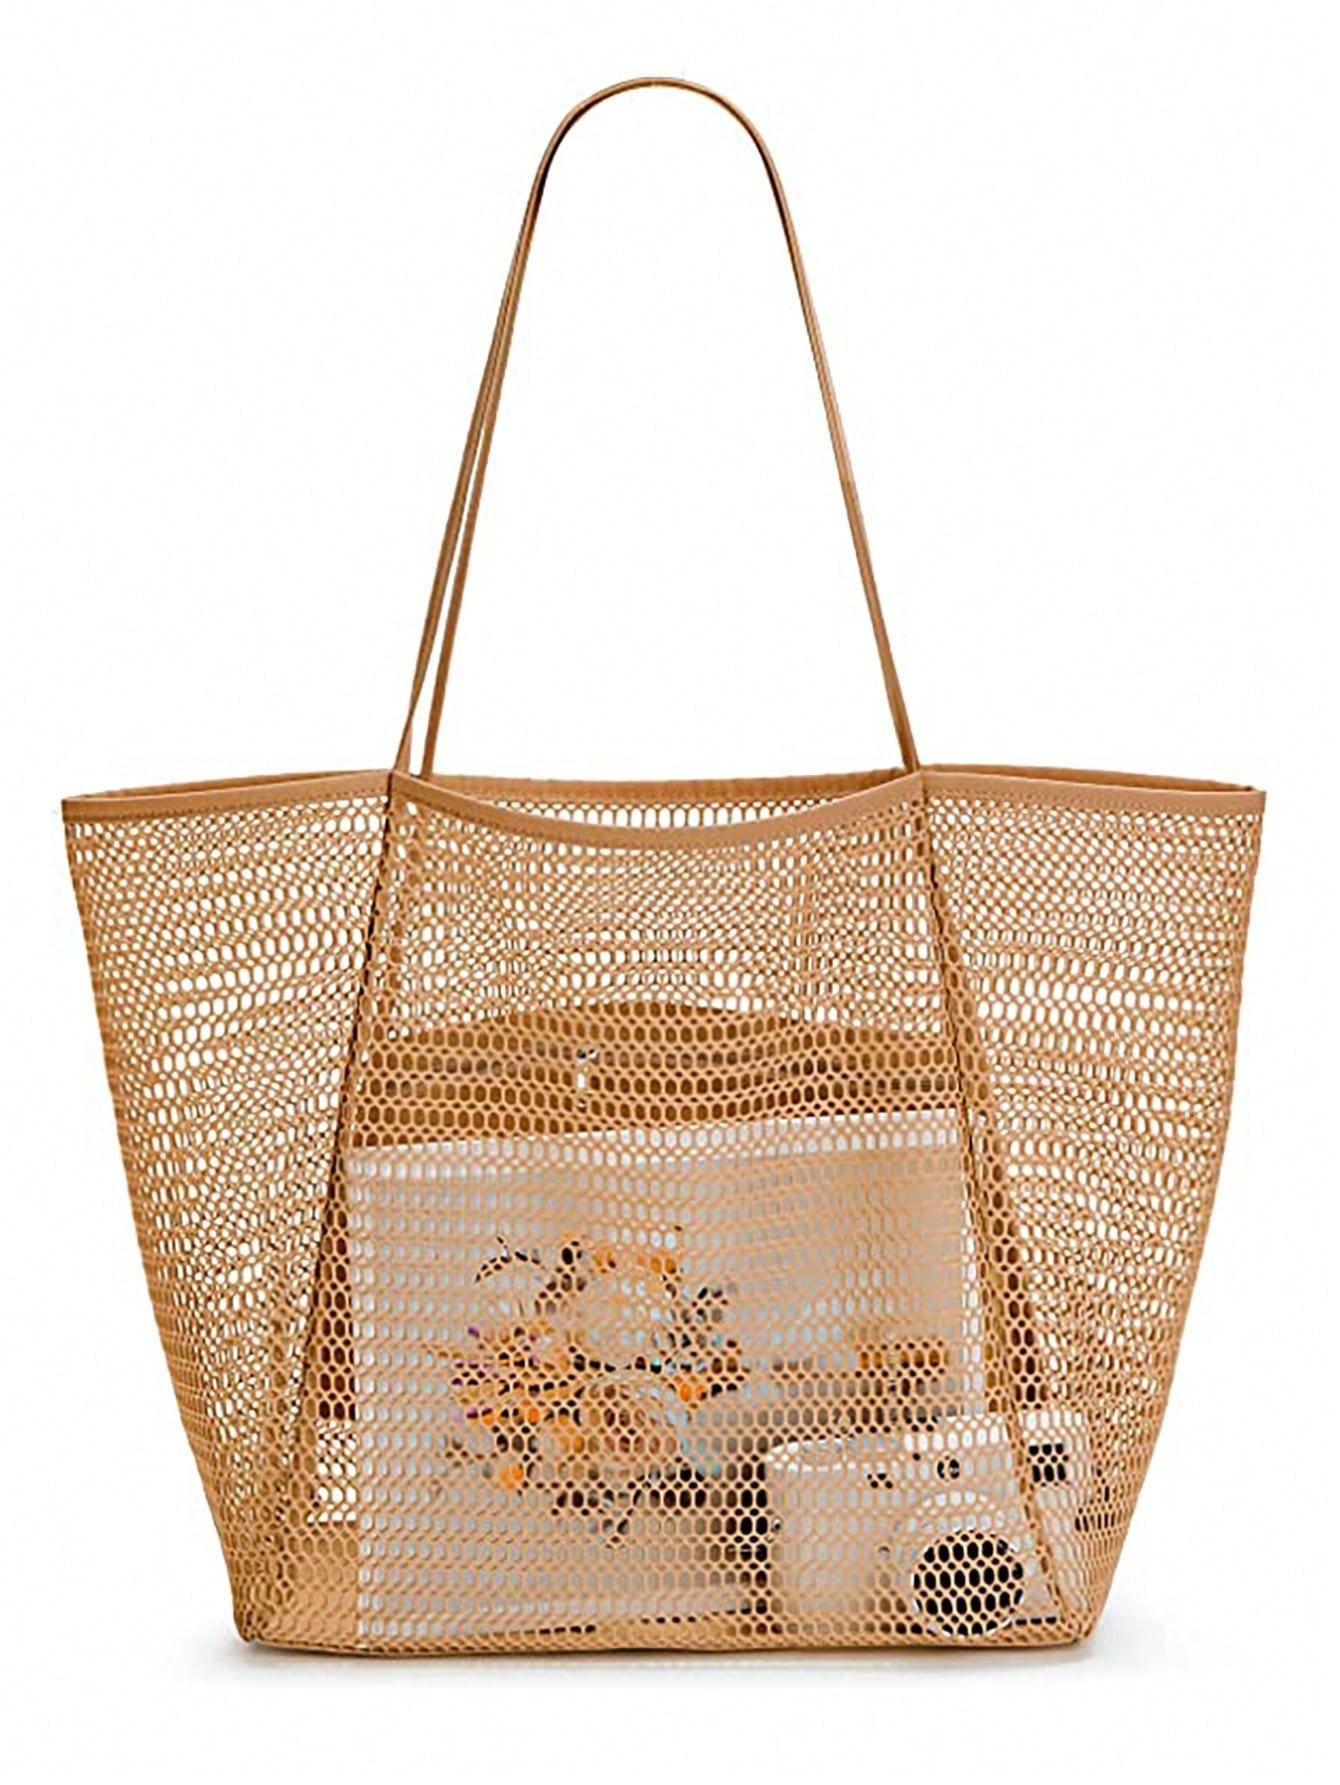 Пляжная сетчатая сумка-тоут, хаки сумка с принтом русской куклы женская повседневная сумка женская сумка на плечо складная сумка для покупок пляжная сумка сумка